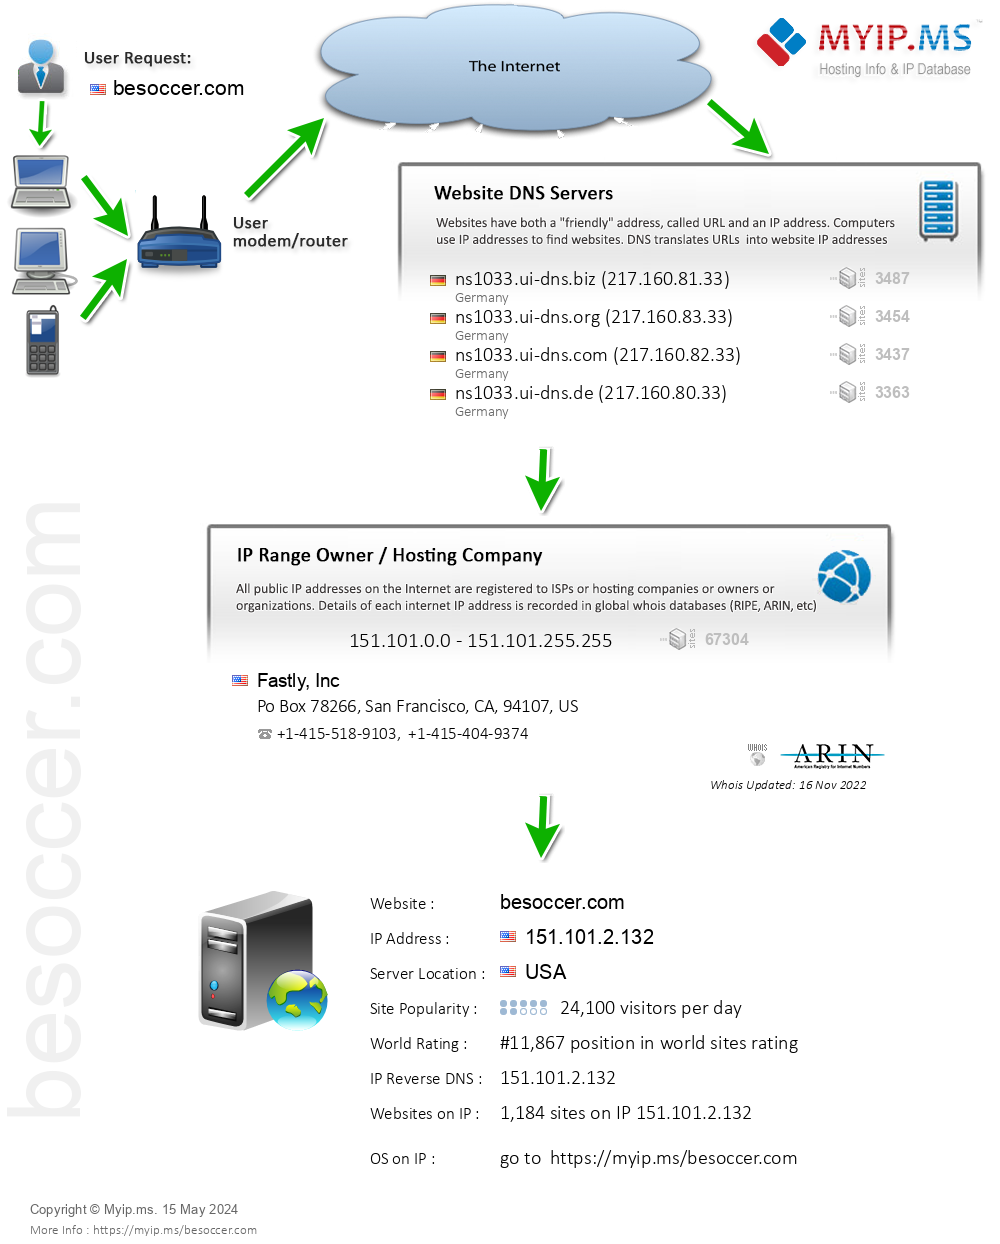 Besoccer.com - Website Hosting Visual IP Diagram